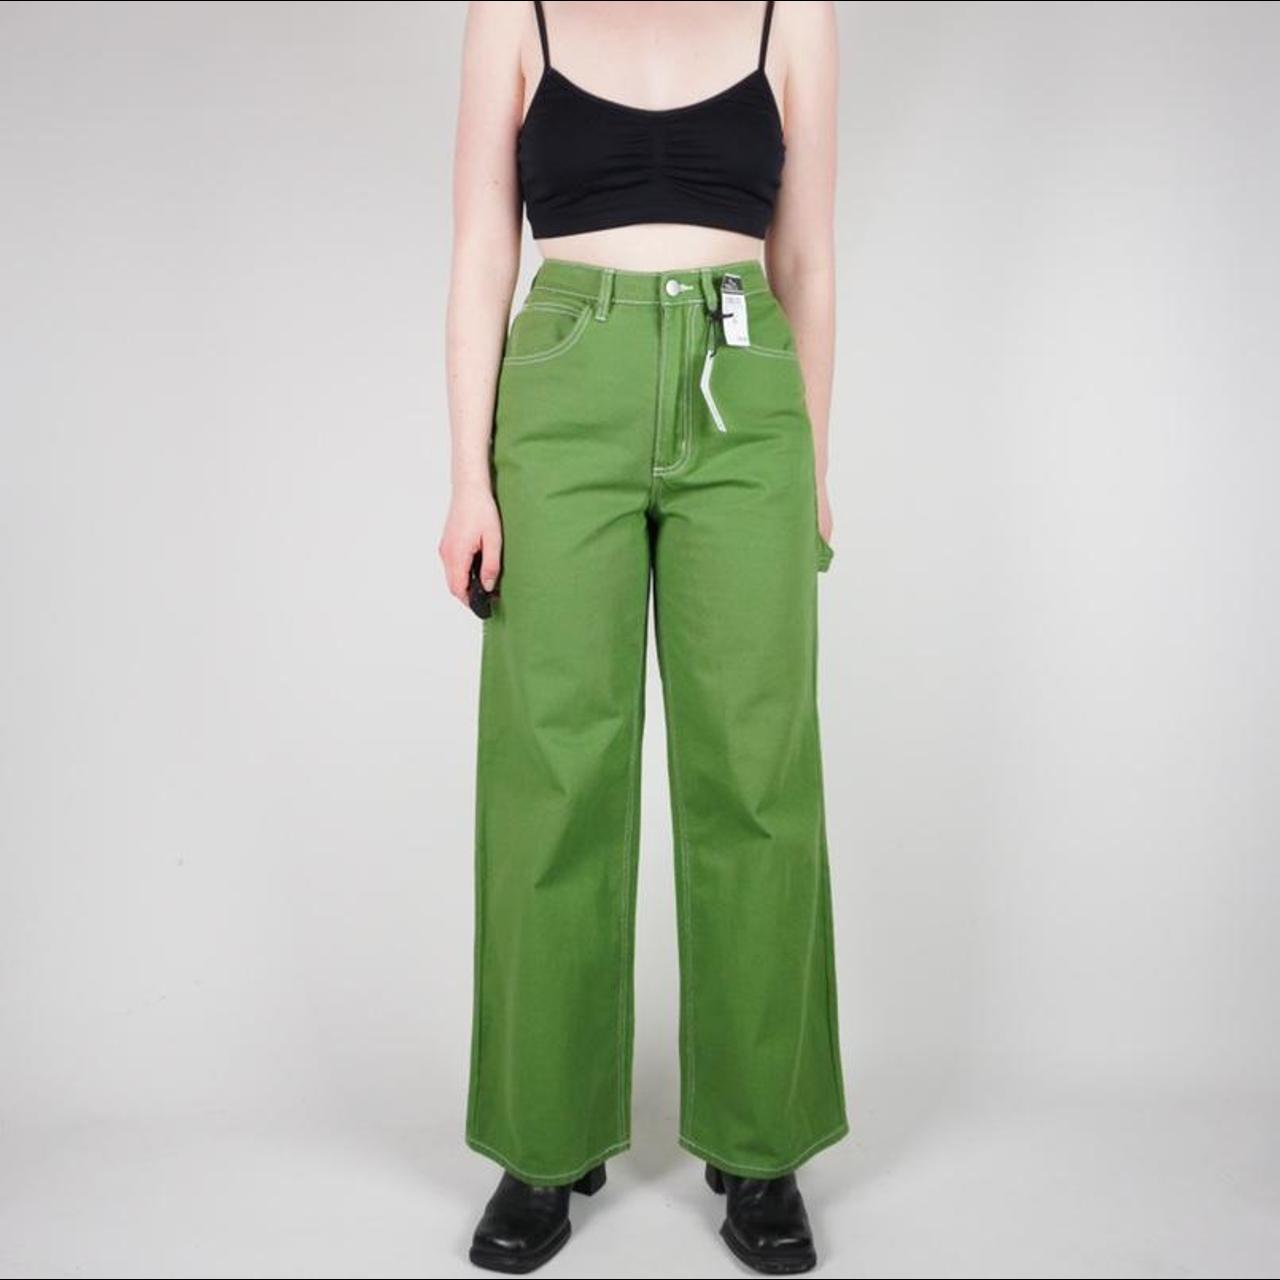 green y2k carpenter pants / jeans - nwt deadstock... - Depop